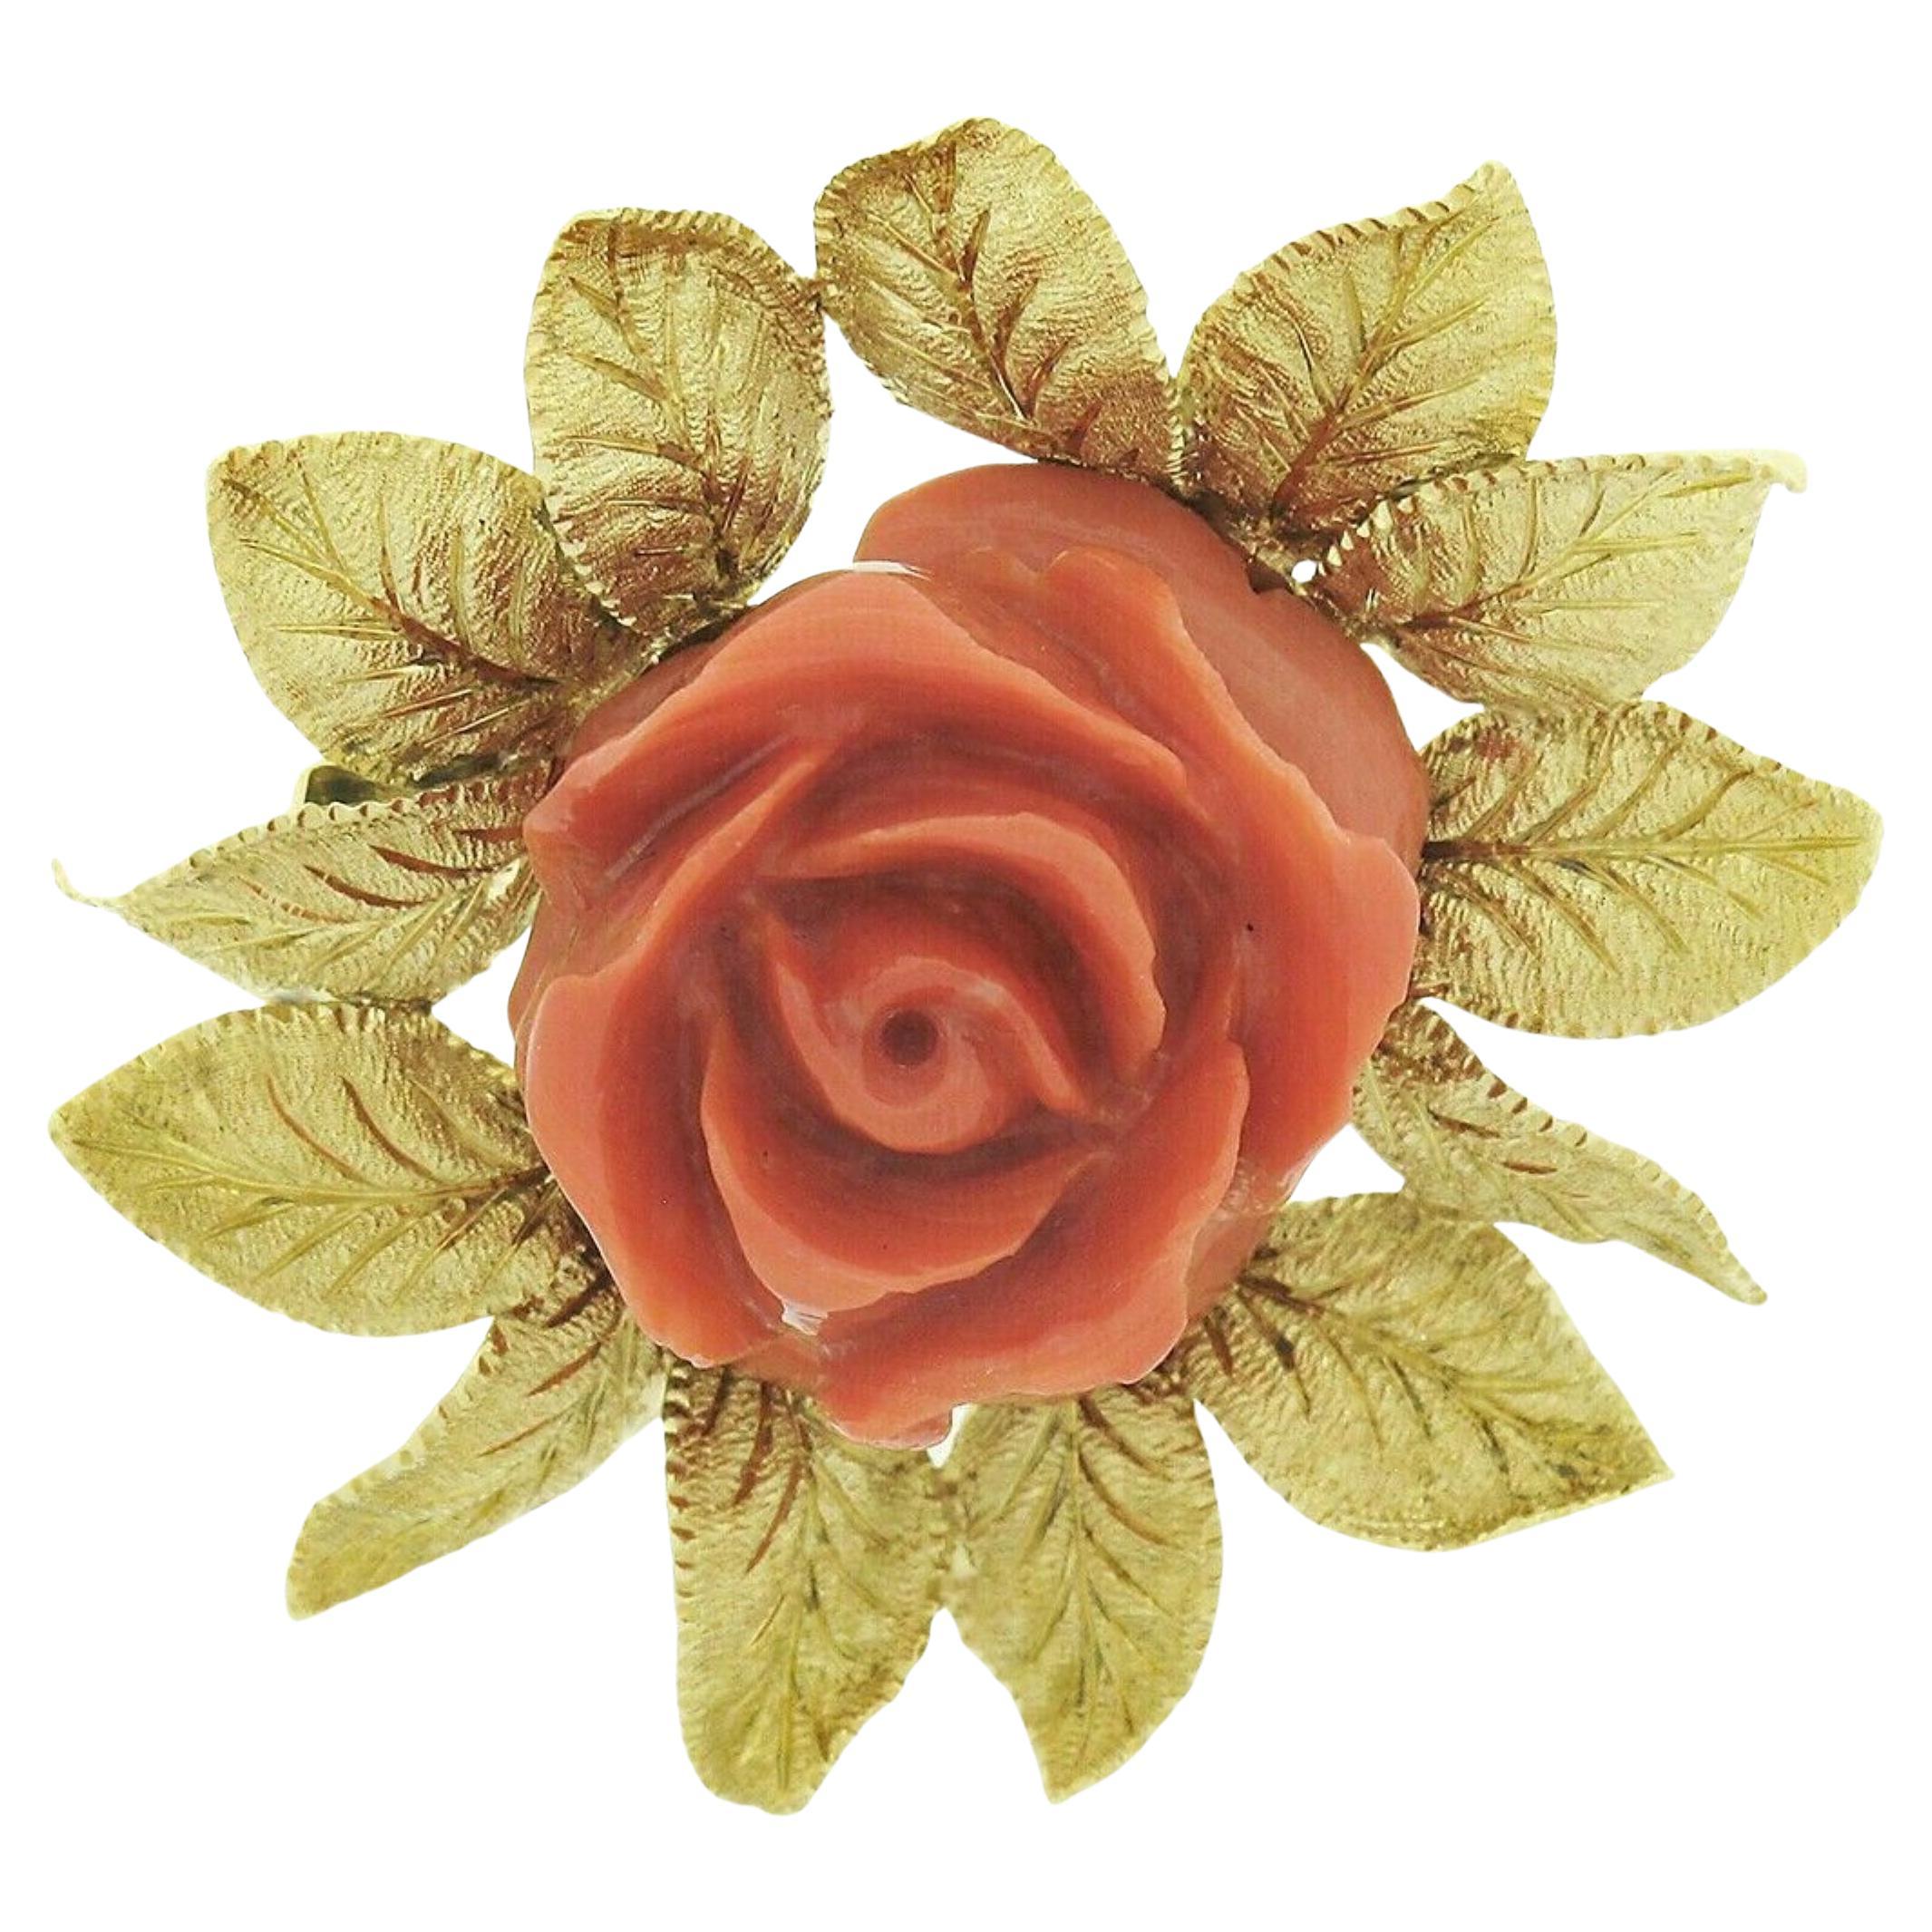 Vintage Vintage GIA nicht gefärbt geschnitzt Rose Koralle Pin Brosche w / 18k Gold strukturiert Blattrahmen